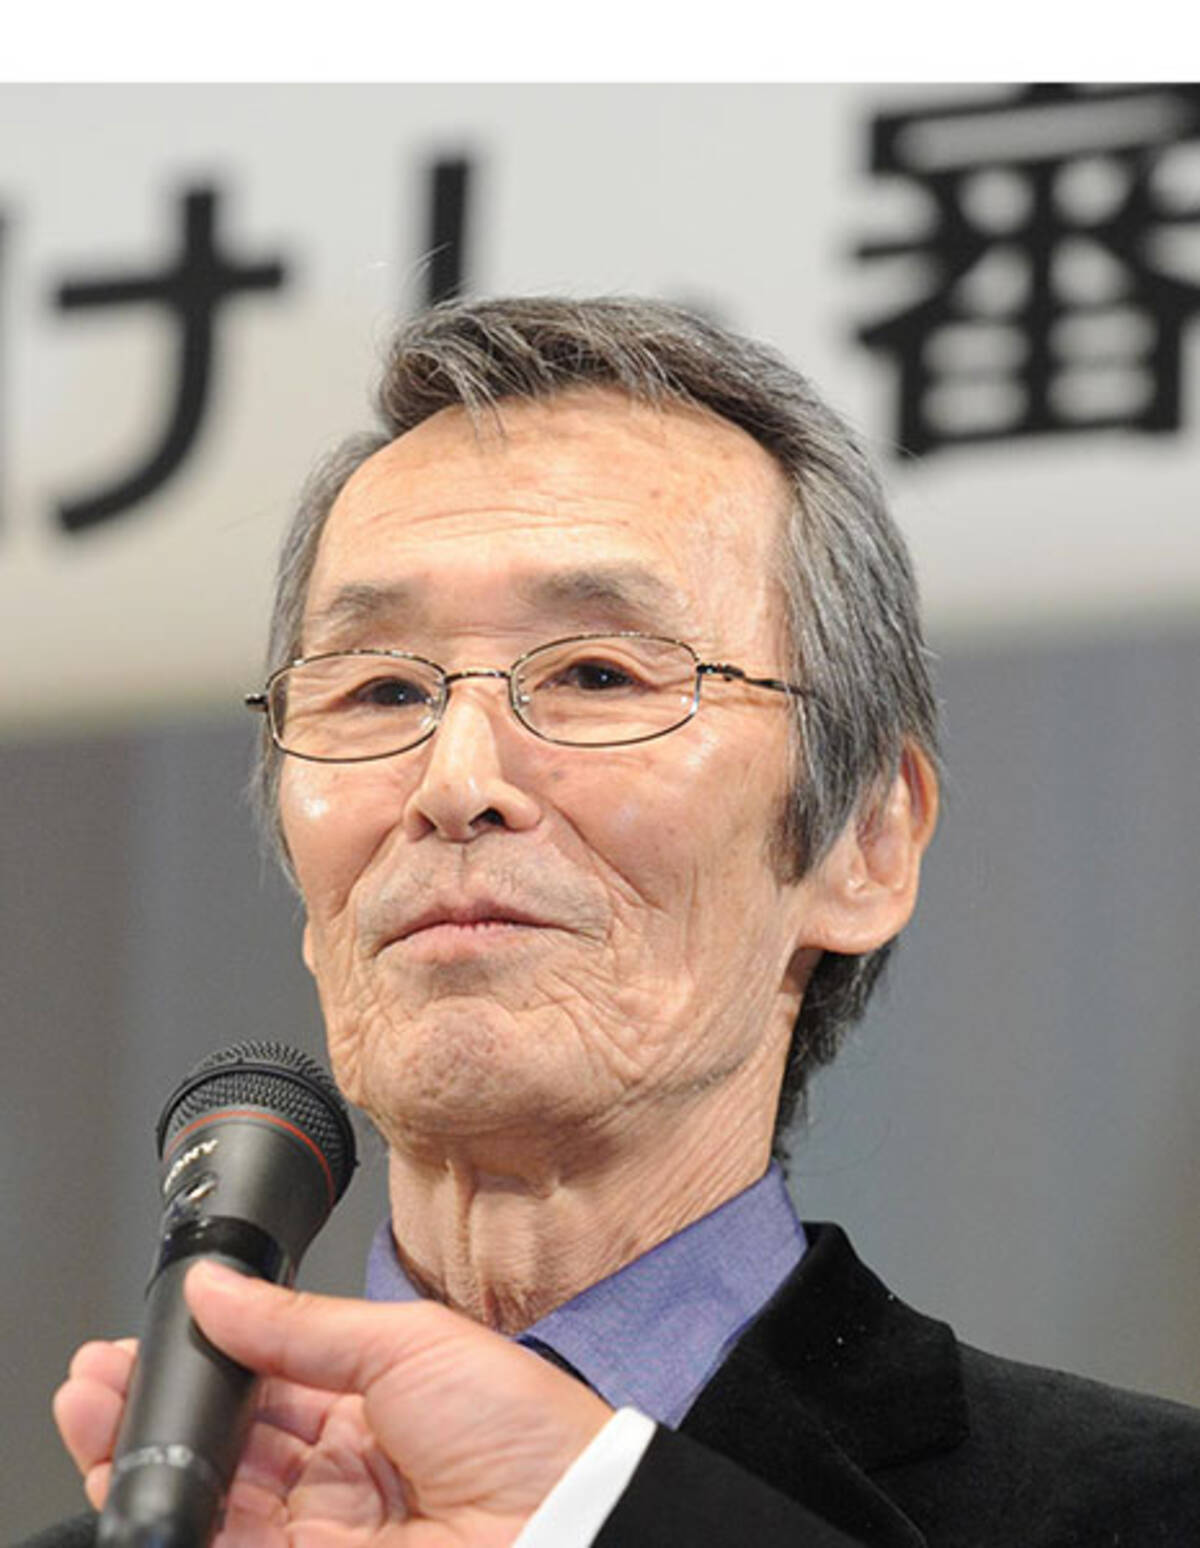 ５万回斬られた男 福本清三さん肺がんで死去 21年1月4日 エキサイトニュース